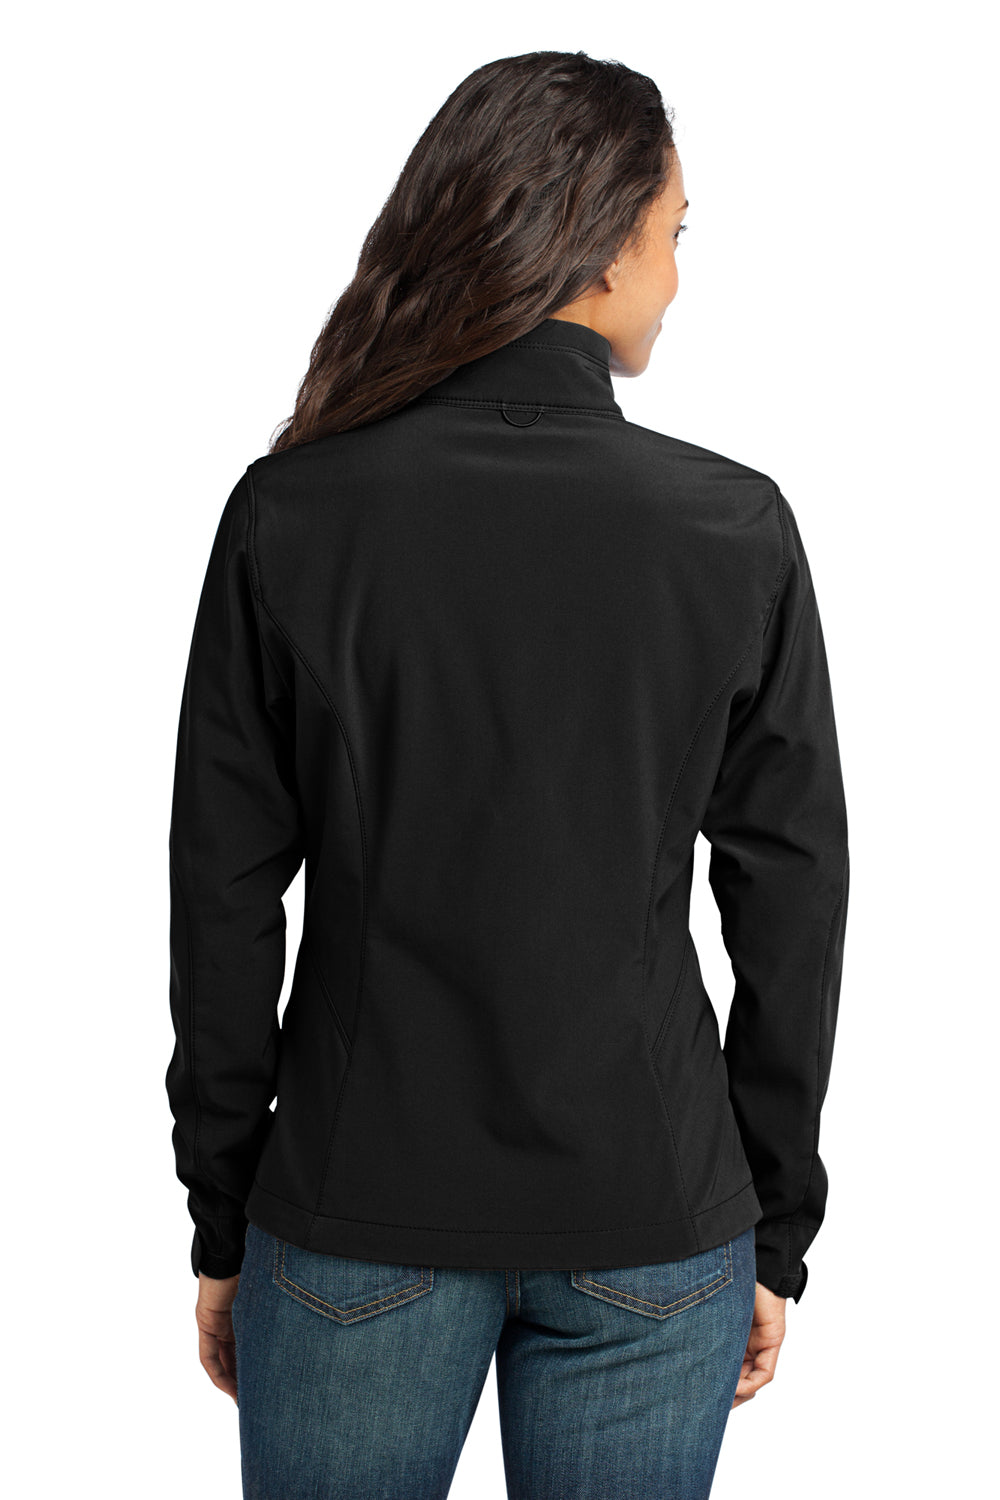 Eddie Bauer EB531 Womens Water Resistant Full Zip Jacket Black Model Back